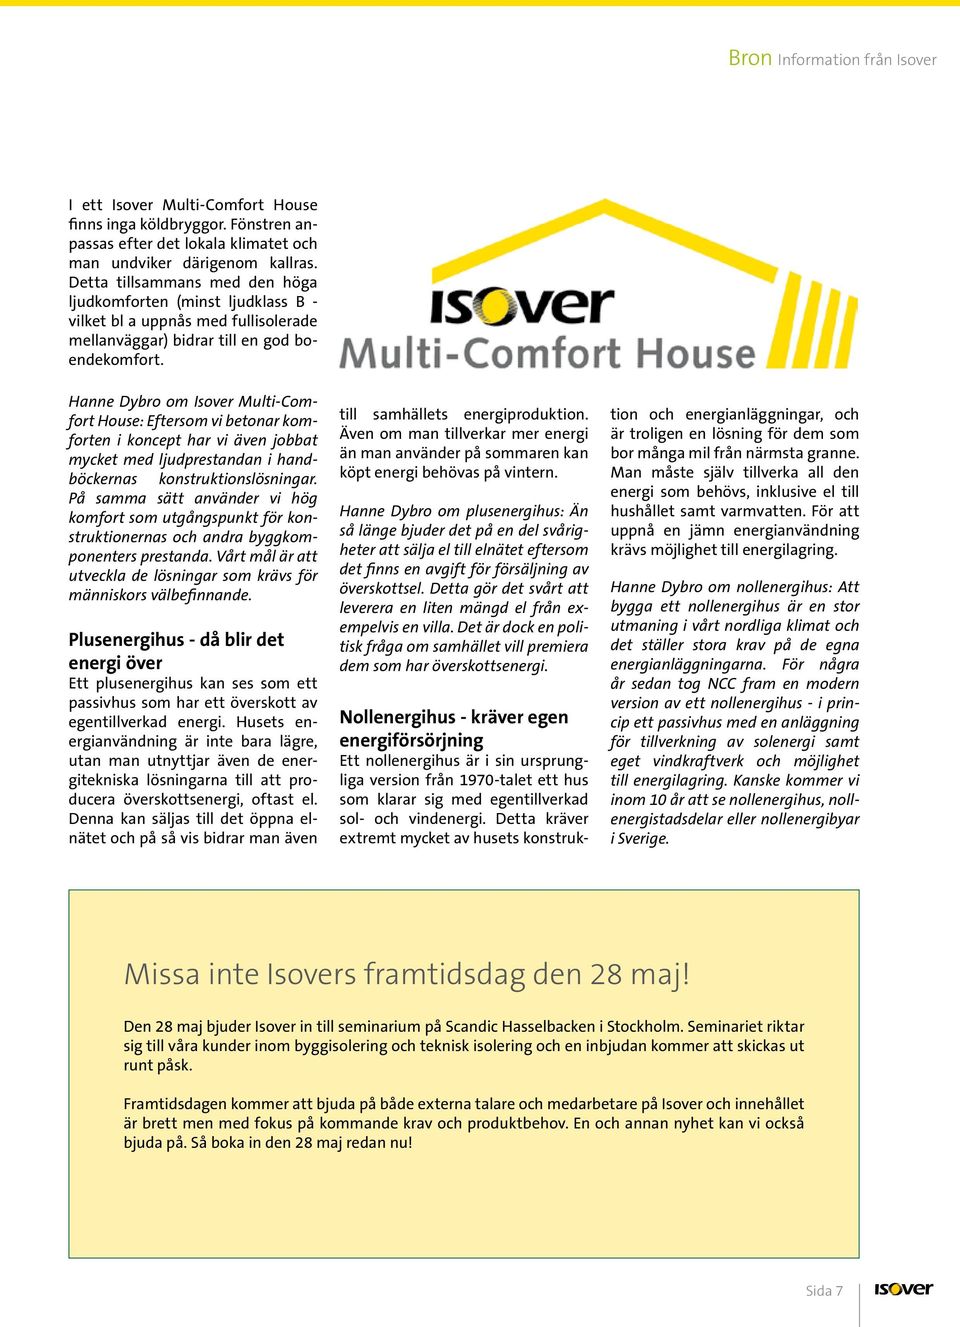 Hanne Dybro om Isover Multi-Comfort House: Eftersom vi betonar komforten i koncept har vi även jobbat mycket med ljudprestandan i handböckernas konstruktionslösningar.